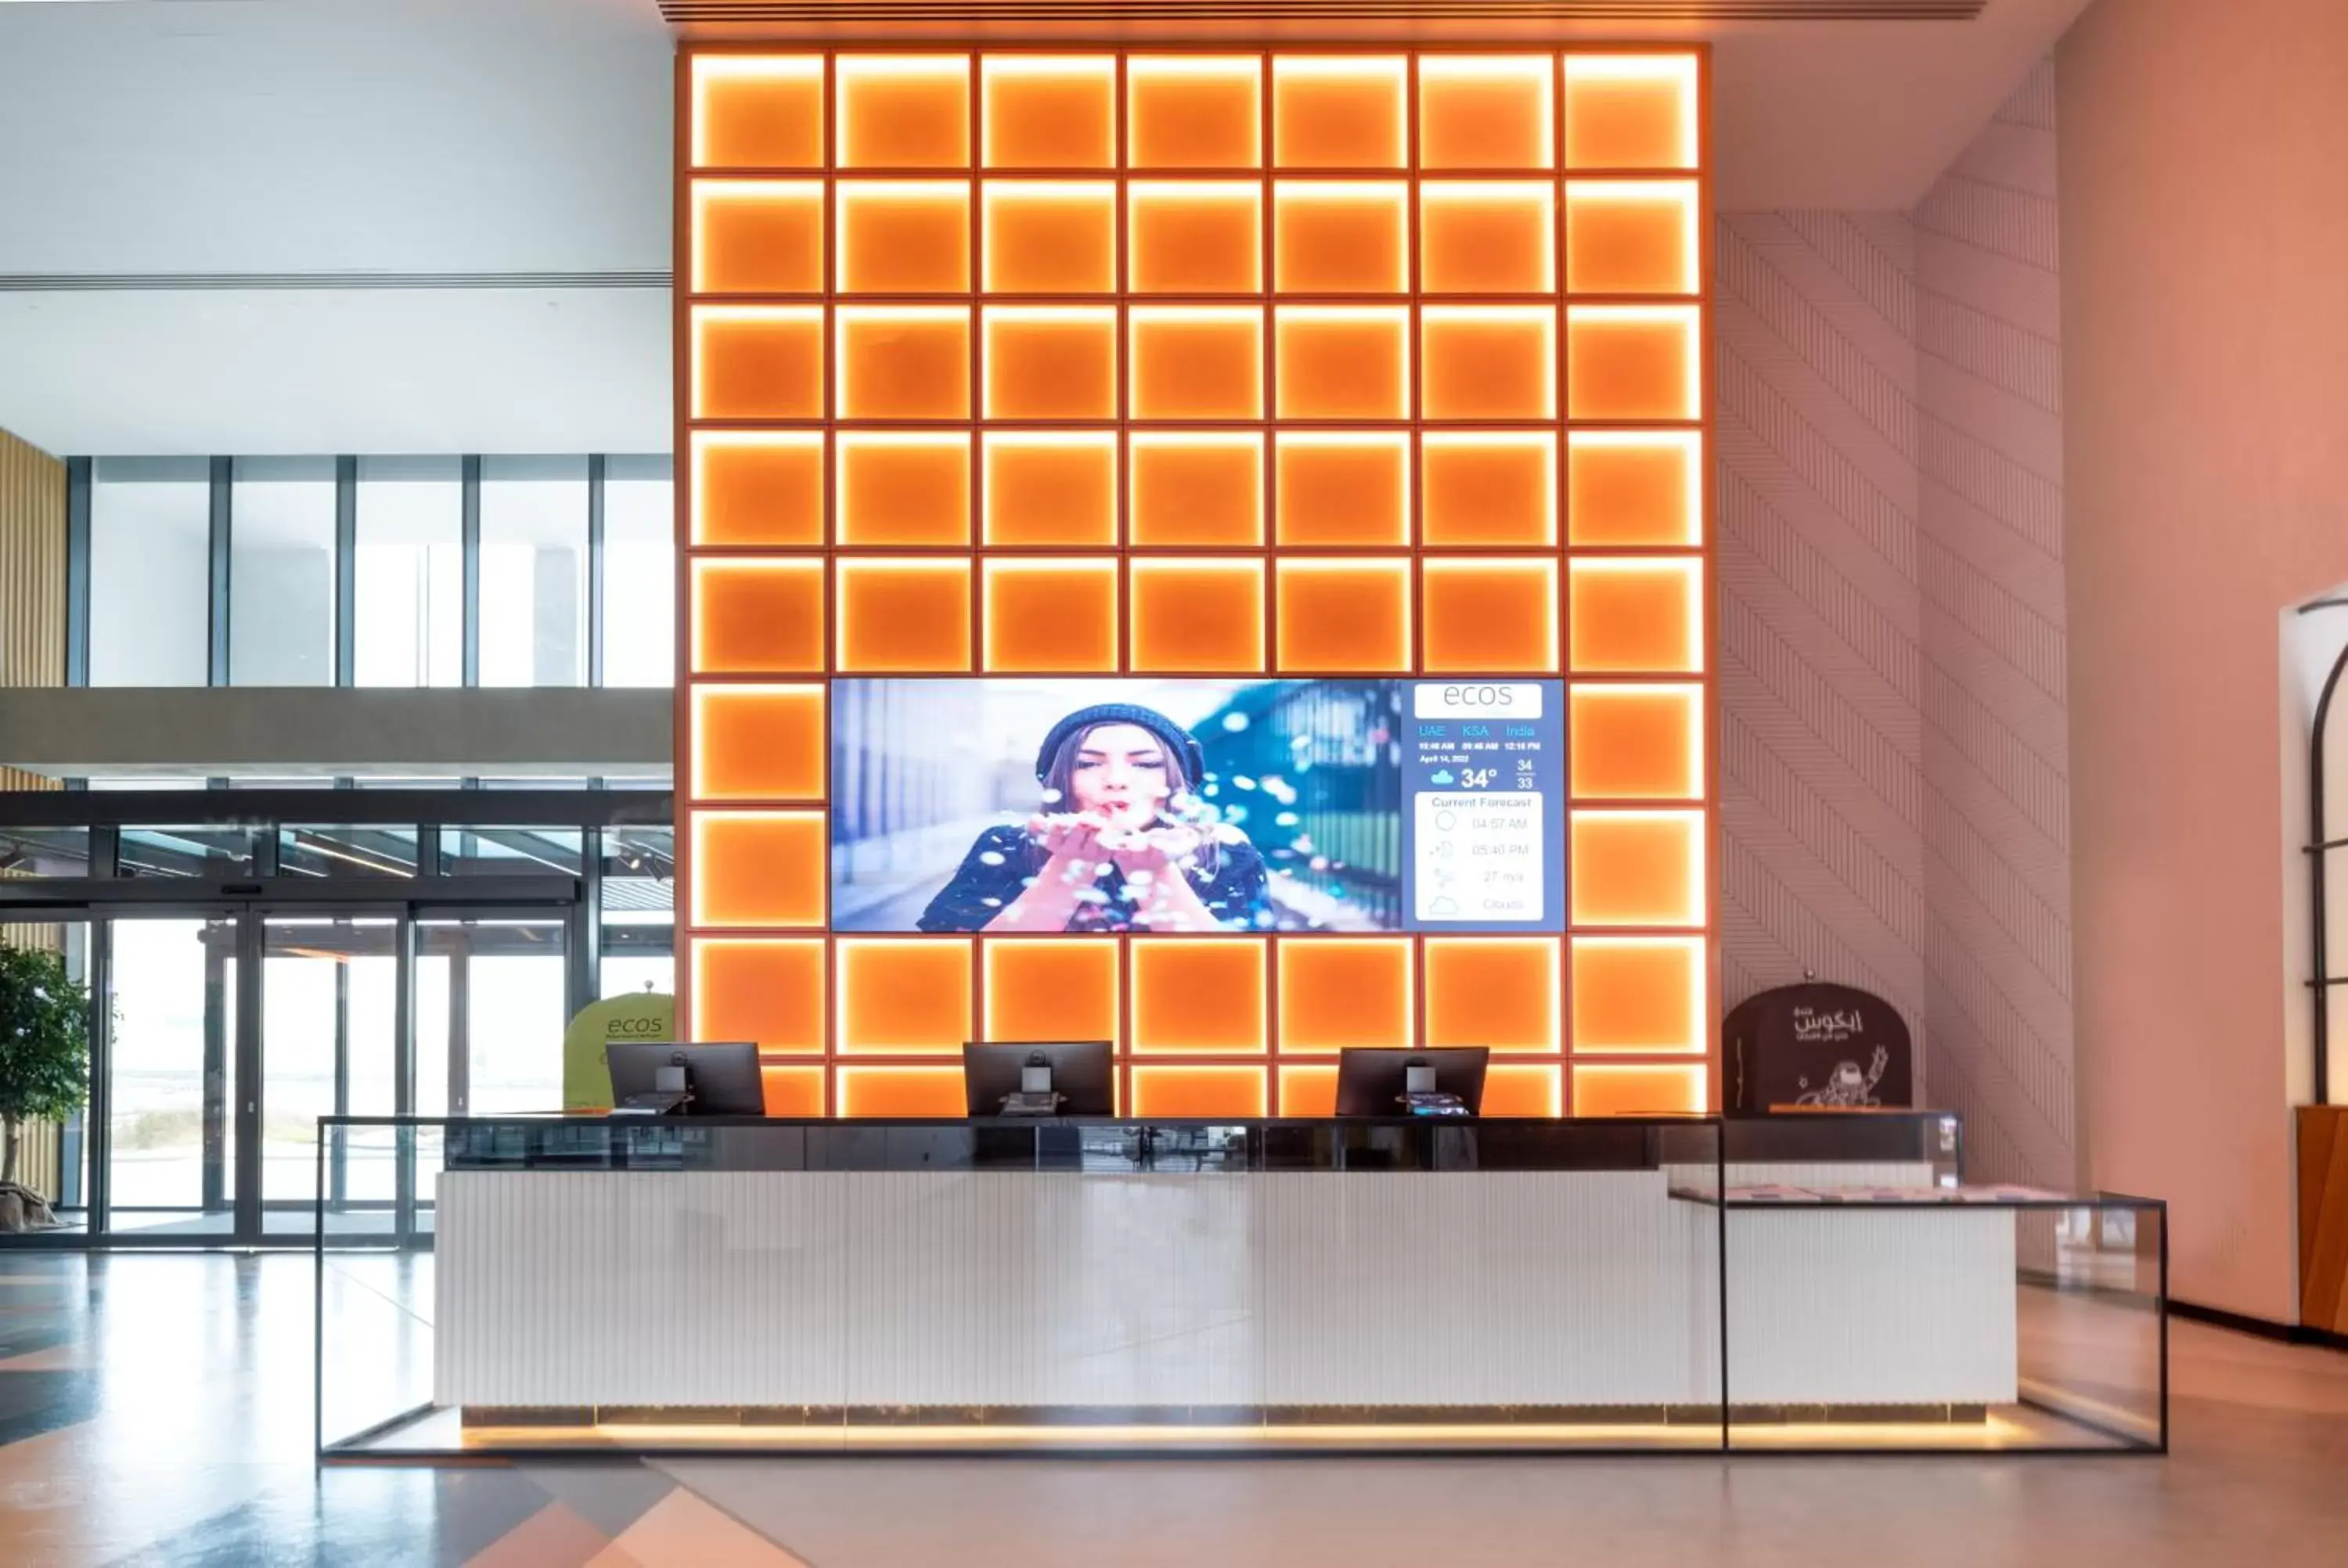 Lobby or reception, Lobby/Reception in Ecos Dubai Hotel at Al Furjan